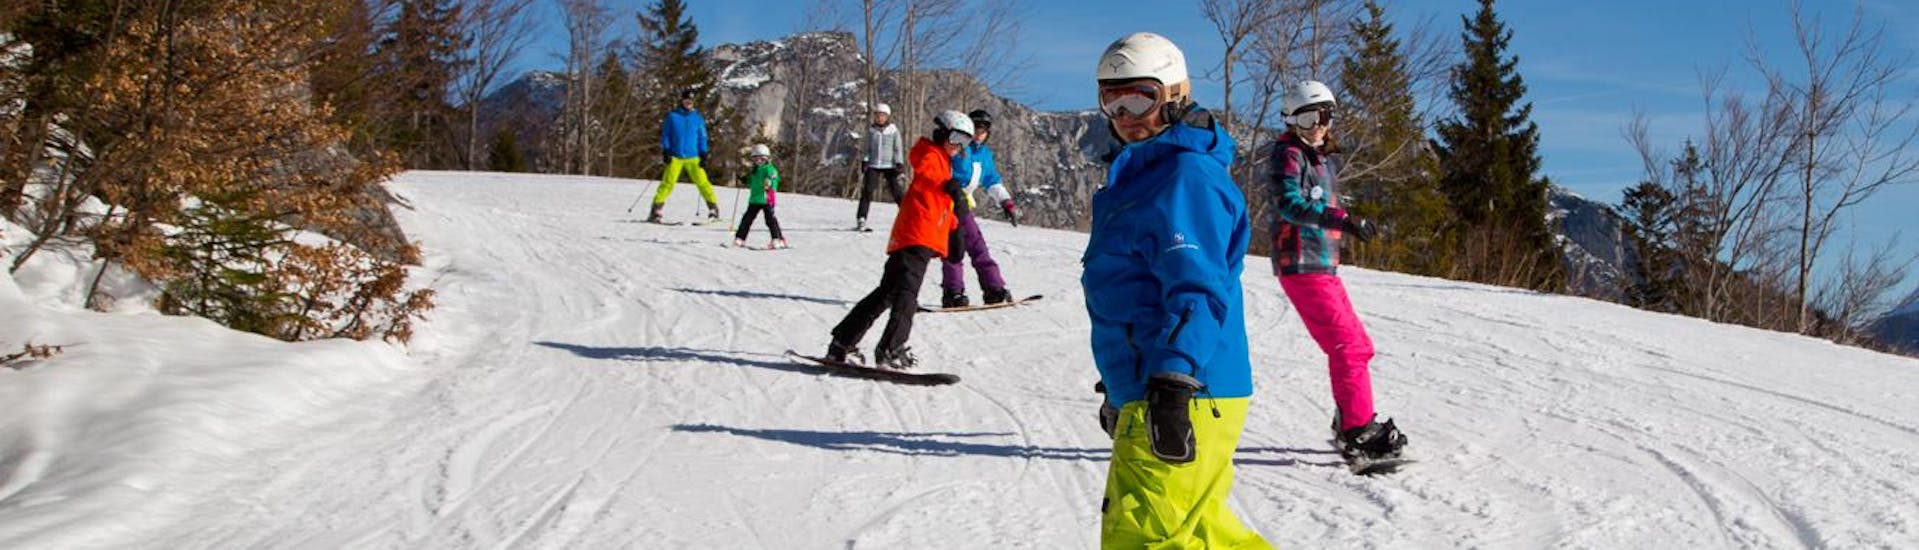 Snowboardlessen vanaf 6 jaar - gevorderd.